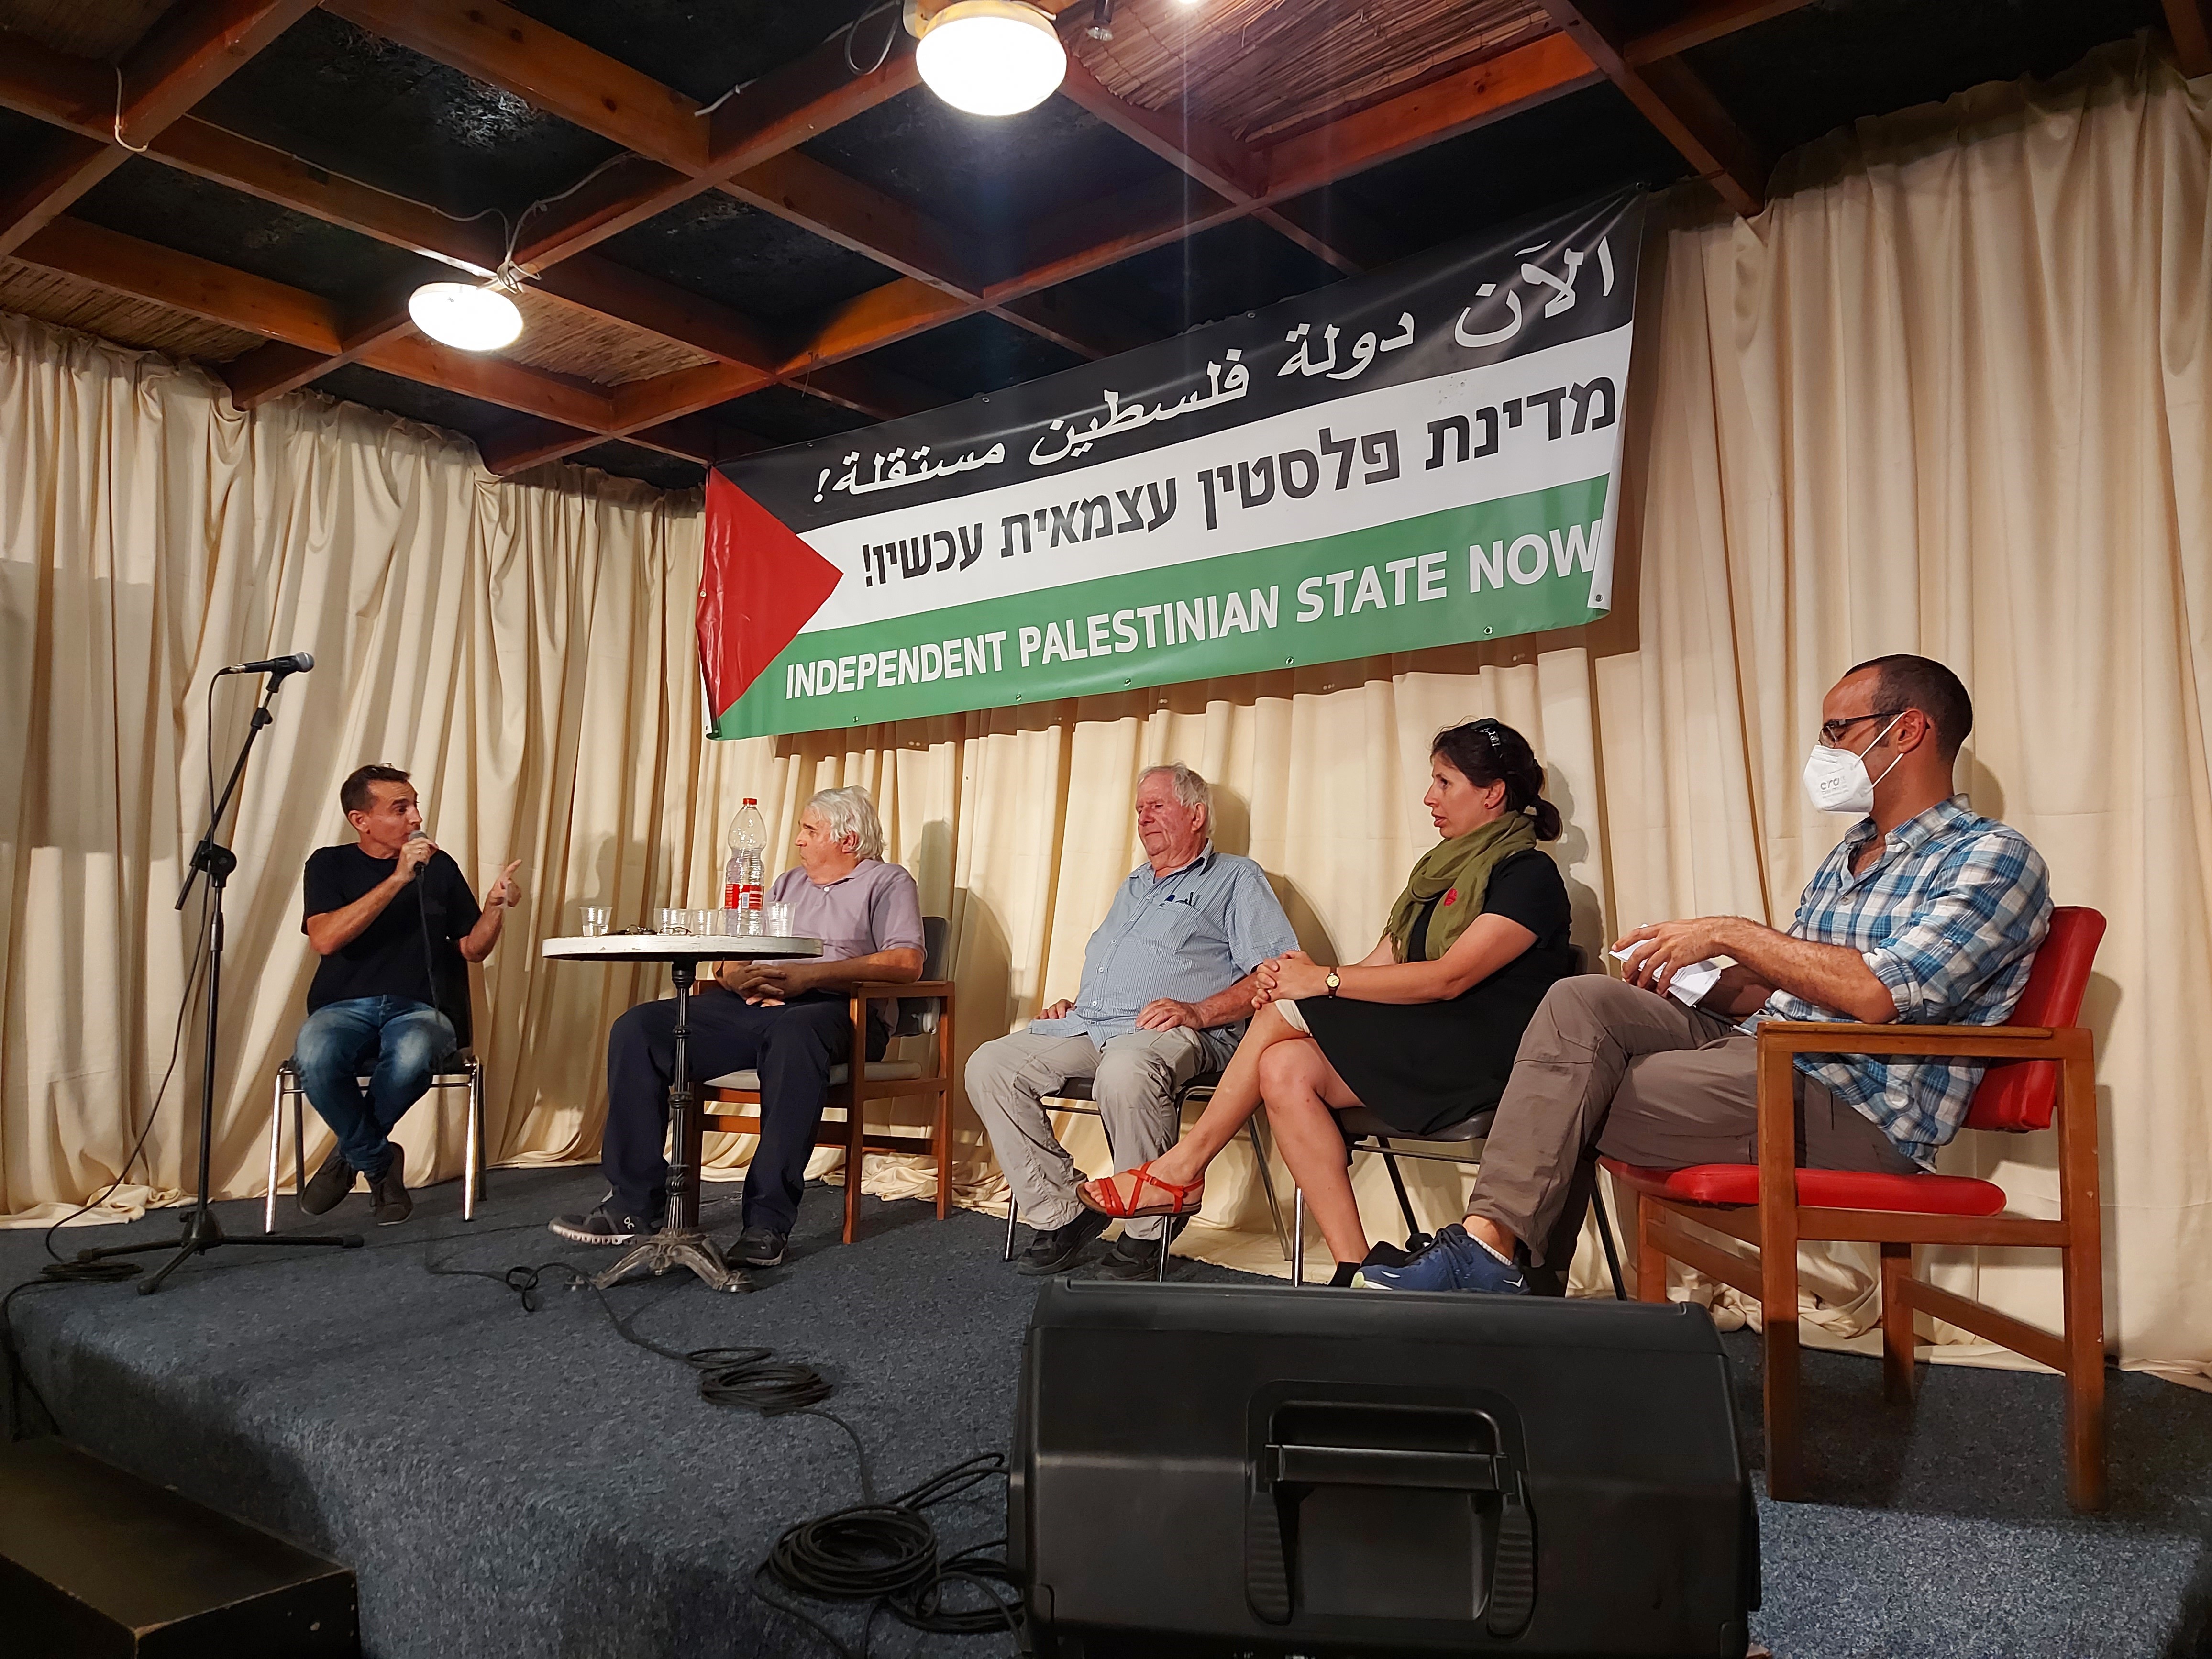 בת"א נערך הכנס הראשון של היוזמה "מדינת פלסטין עכשיו" בהשתתפות ישראלים ופלסטינים